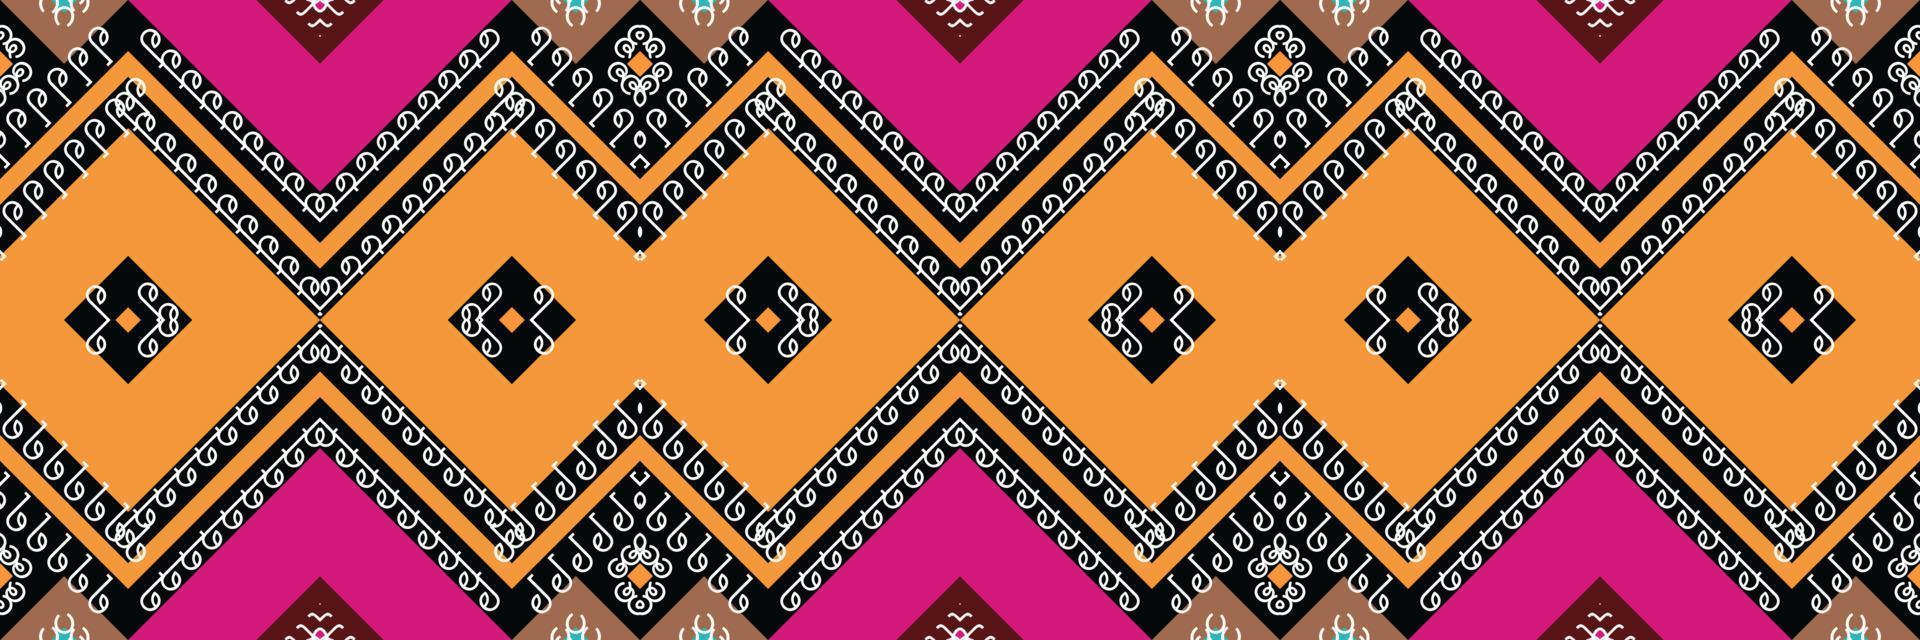 etnico azteco ikat senza soluzione di continuità modello tessile ikat diamante senza soluzione di continuità modello digitale vettore design per Stampa saree Kurti Borneo tessuto azteco spazzola simboli campioni progettista